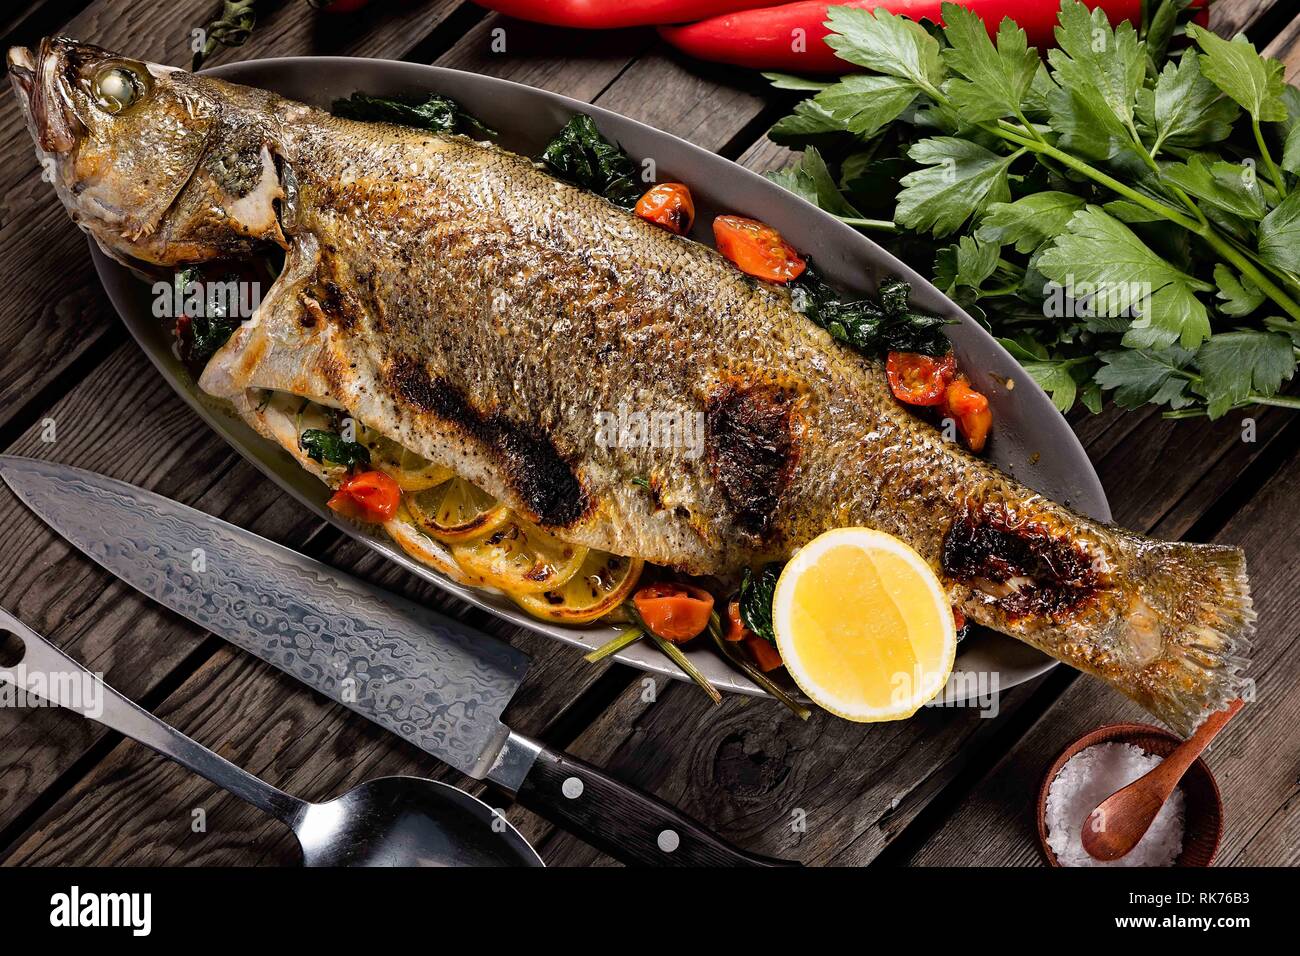 Beau poisson entier grillé et servi sur une poêle en métal avec des tomates, du citron et des herbes Banque D'Images